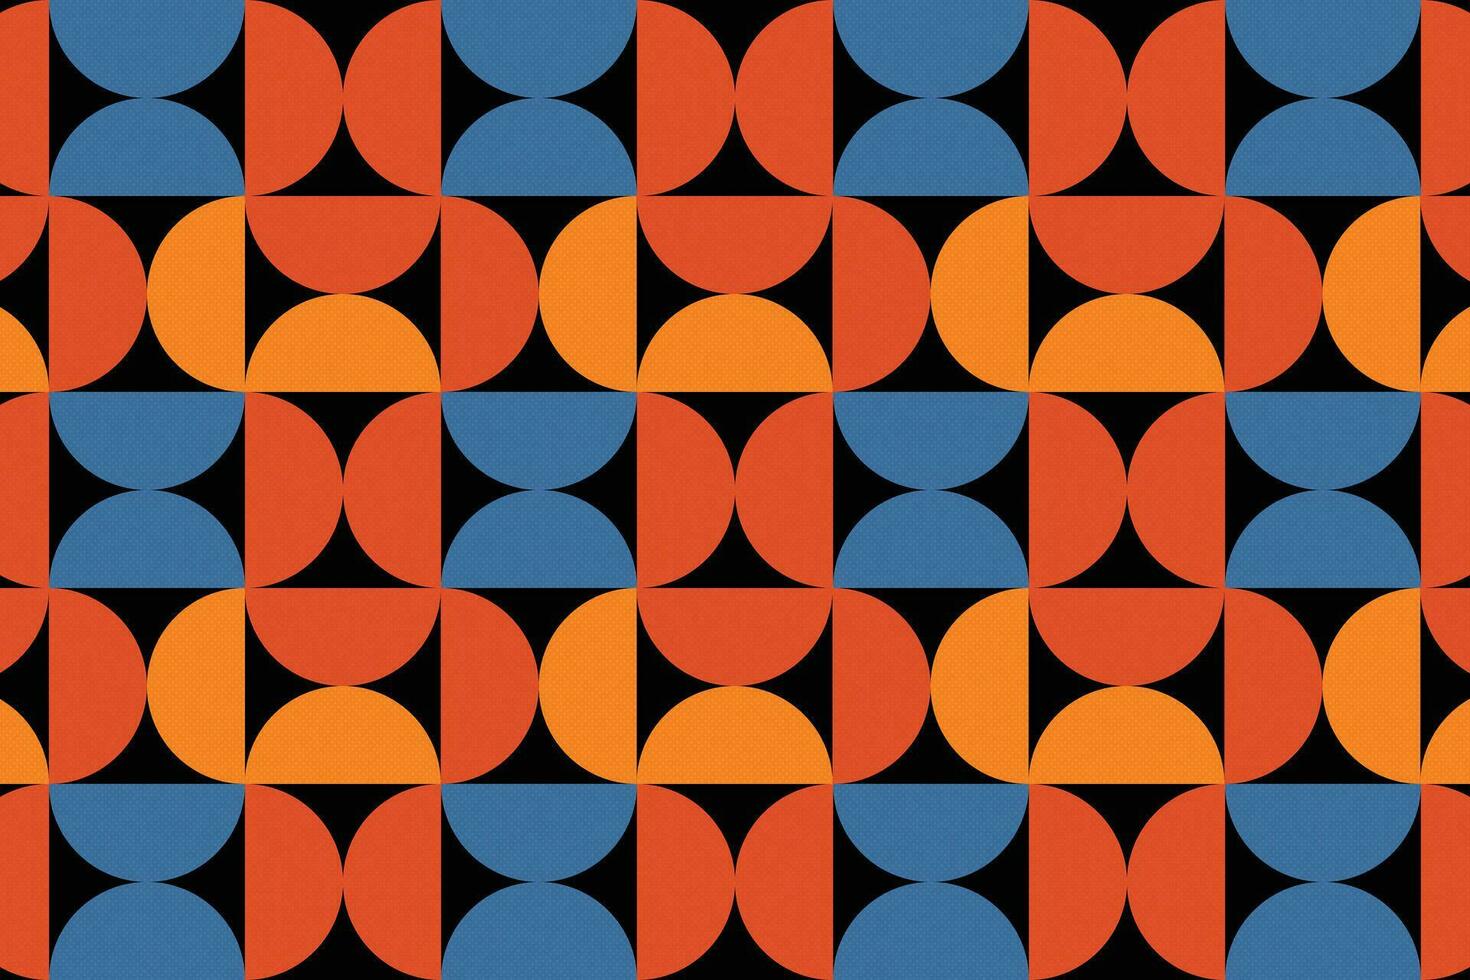 abstrakt geometrisk bakgrunder blandning halvcirklar och trianglar, med en sammansättning av orange, blå, röd och grädde färger och svart bas färger. vektor